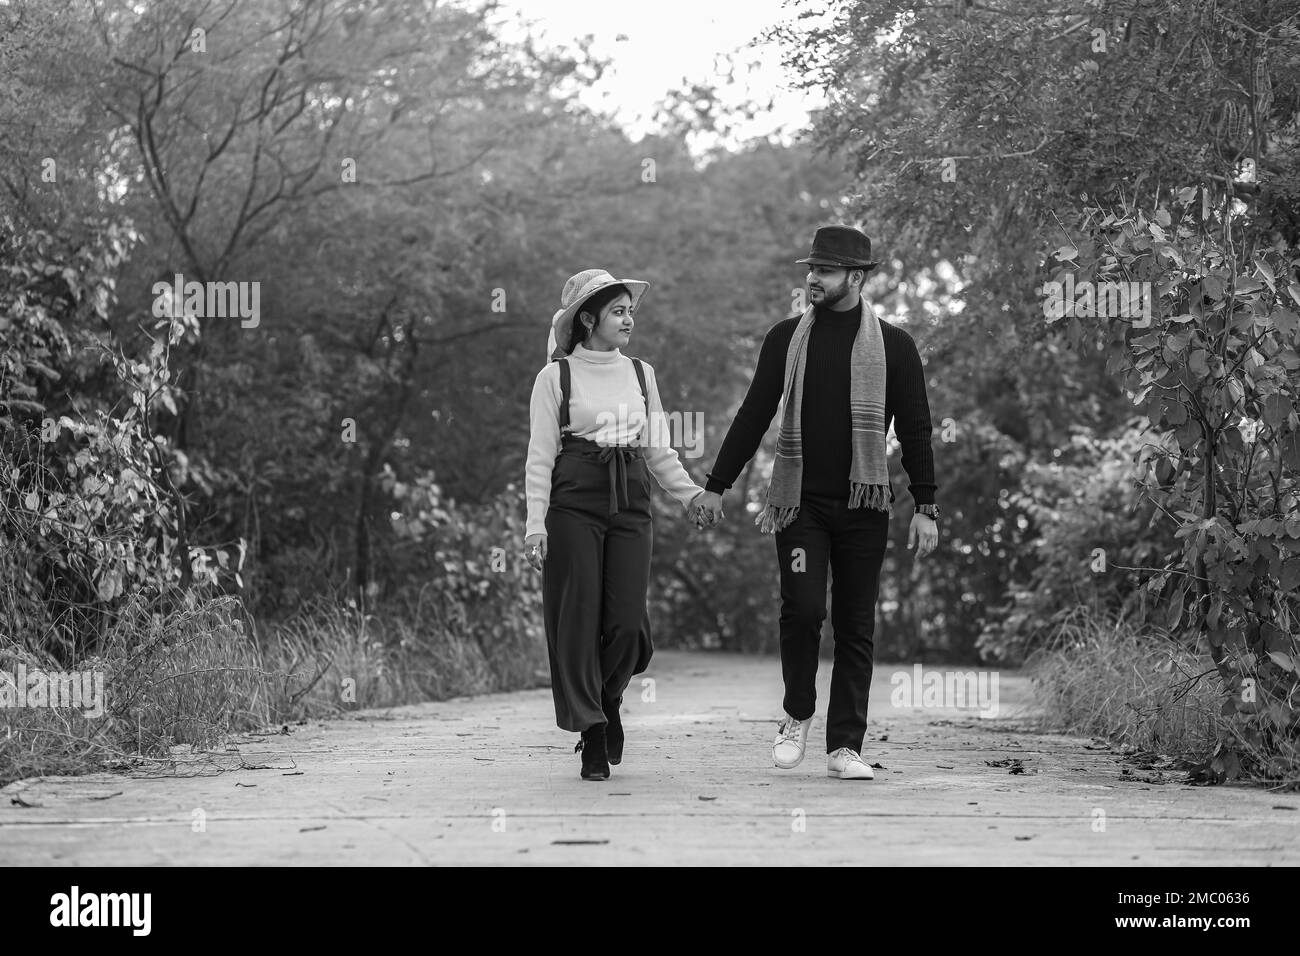 Vor der Hochzeit wurde ein indisches Paar auf dem Weg der Natur in Delhi, Indien, aufgenommen. Romantisches Paar Shoot. Braut und Bräutigam im natürlichen Wald mit Bäumen. Stockfoto